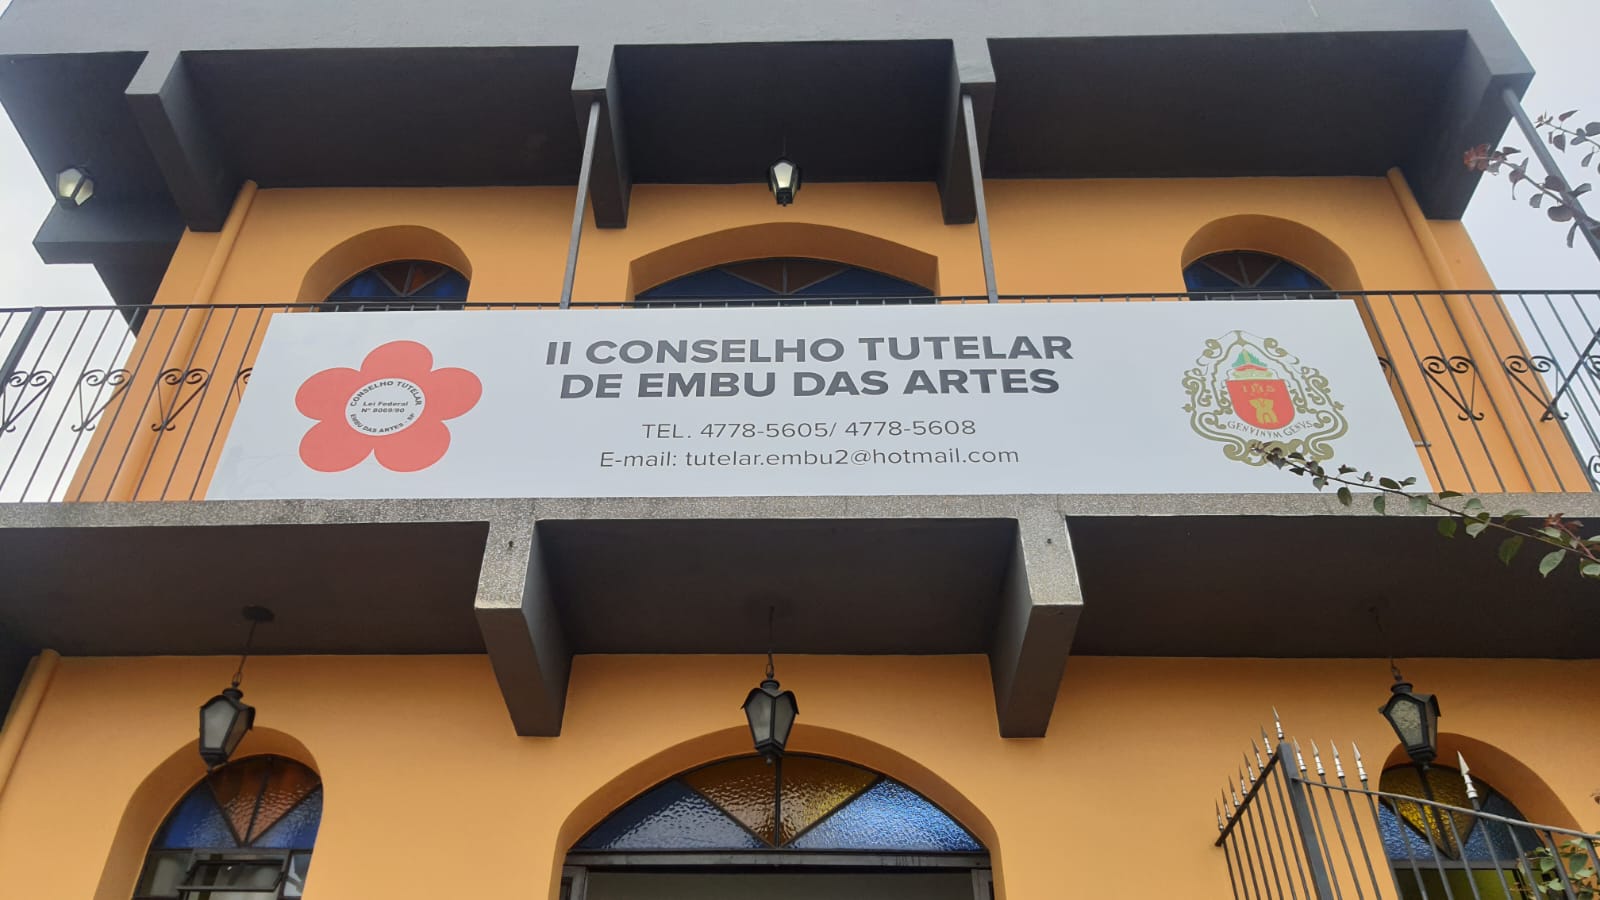 Inaugurada nova sede do Conselho Tutelar II de Embu das Artes